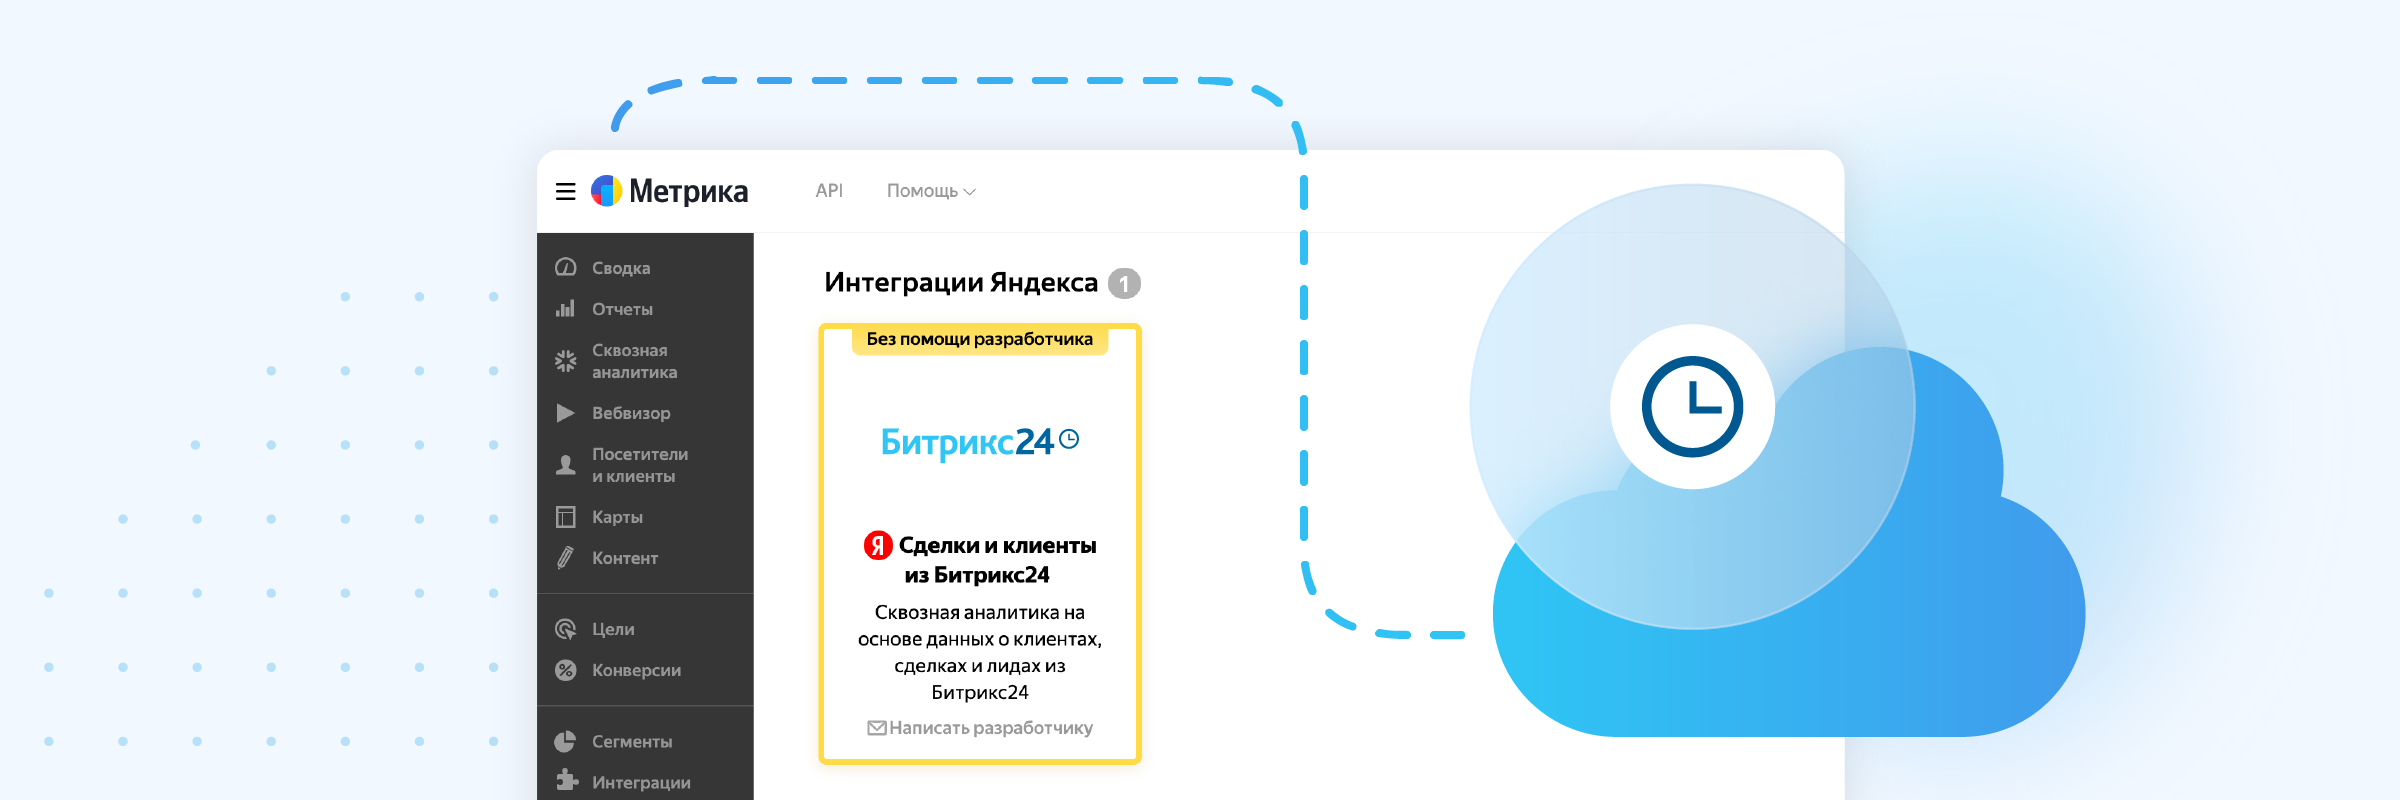 Официальная интеграция с Битрикс24 от Яндекс метрики!